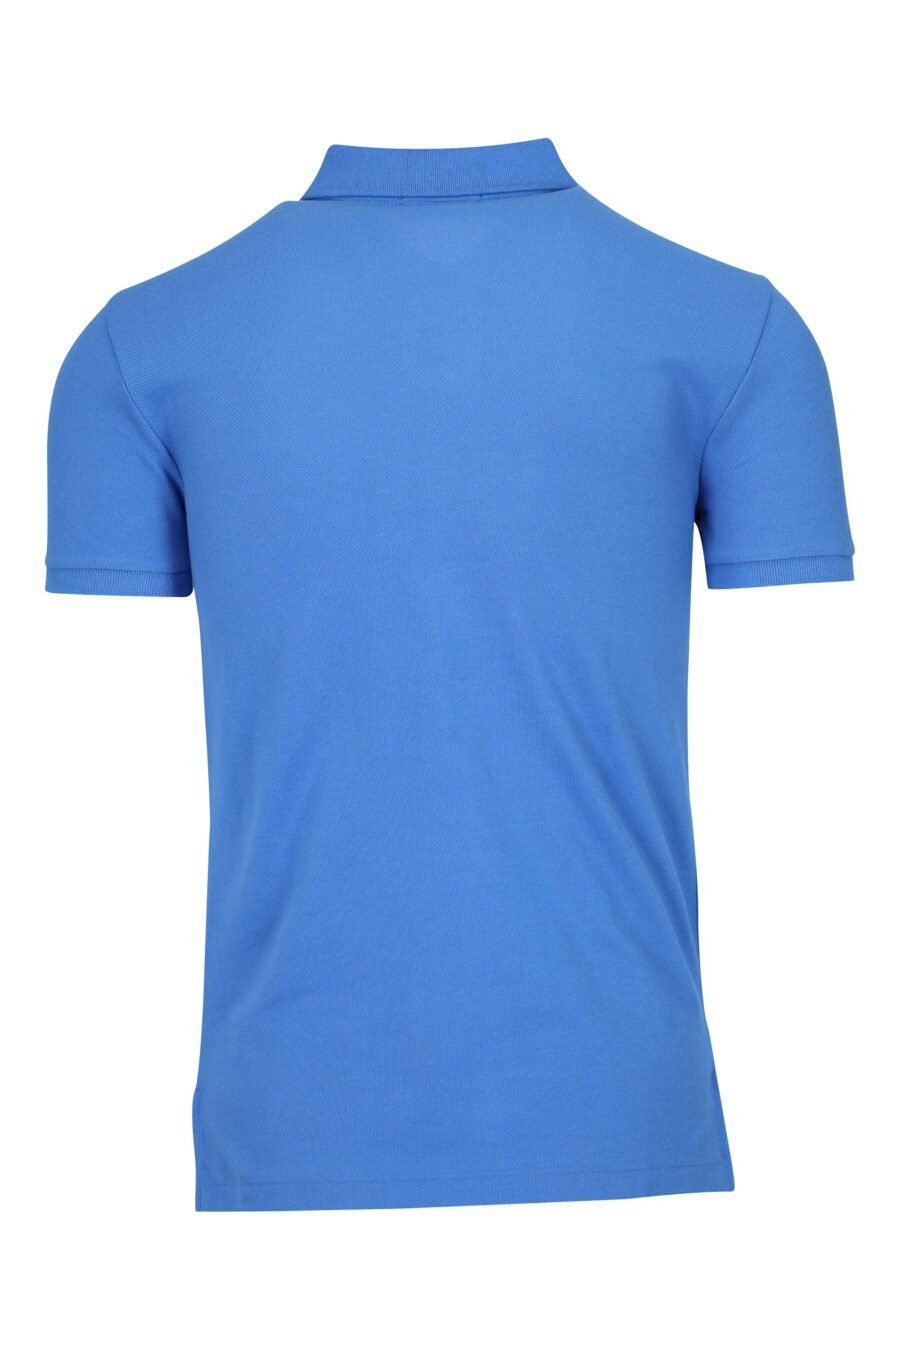 Camiseta azul y rosa con minilogo "polo" - 3616536089159 1